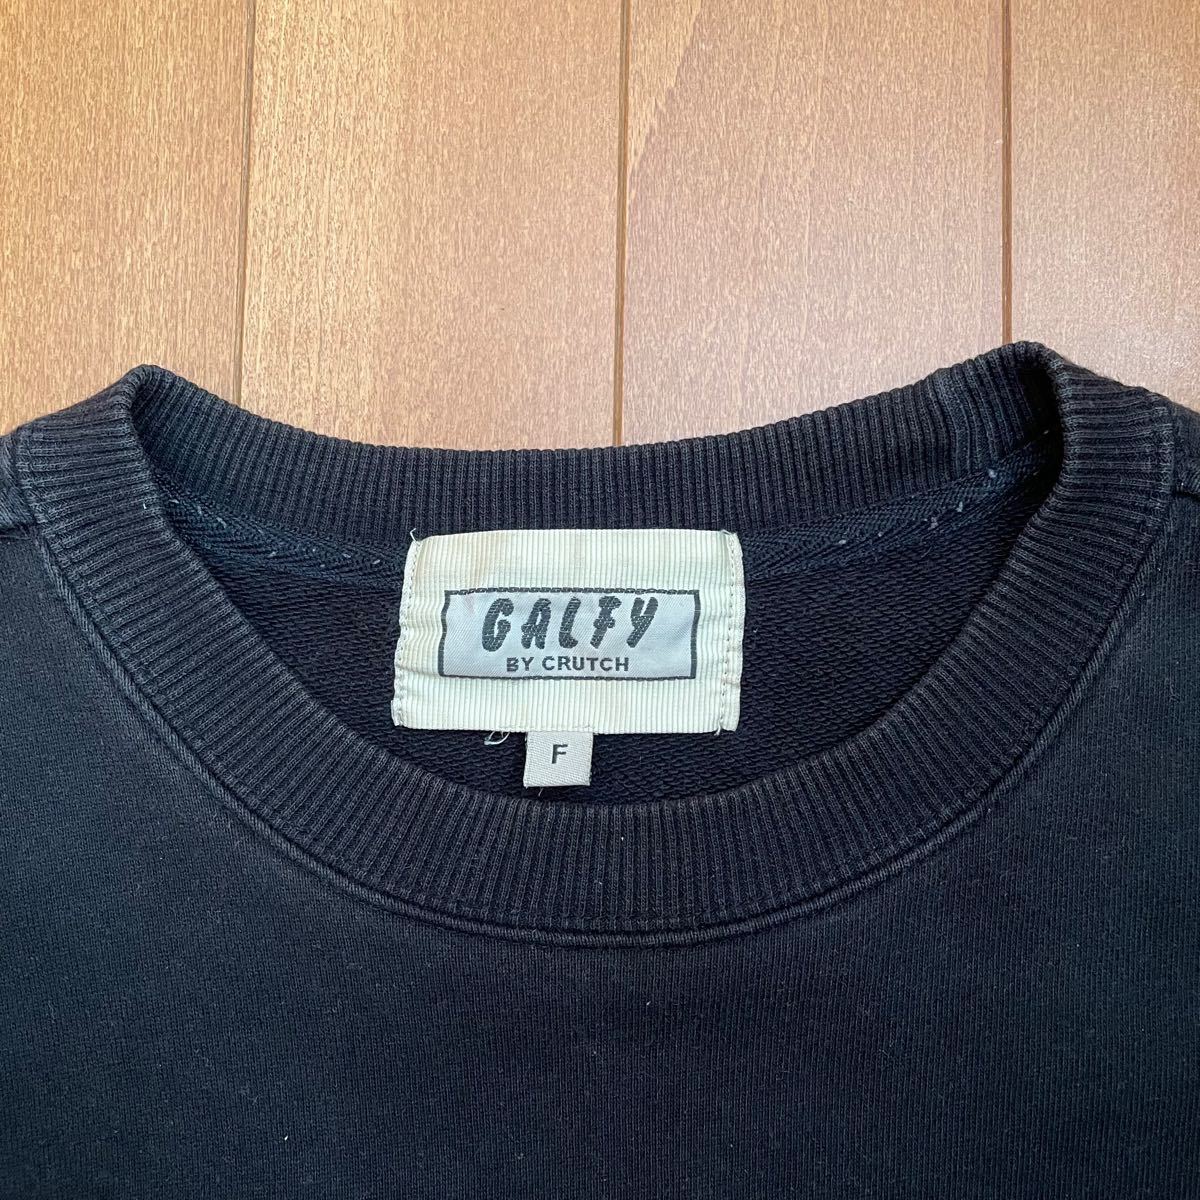 90s GALFY スウェット トレーナー バックビッグ刺繍ロゴ ZKRod8Hf18 